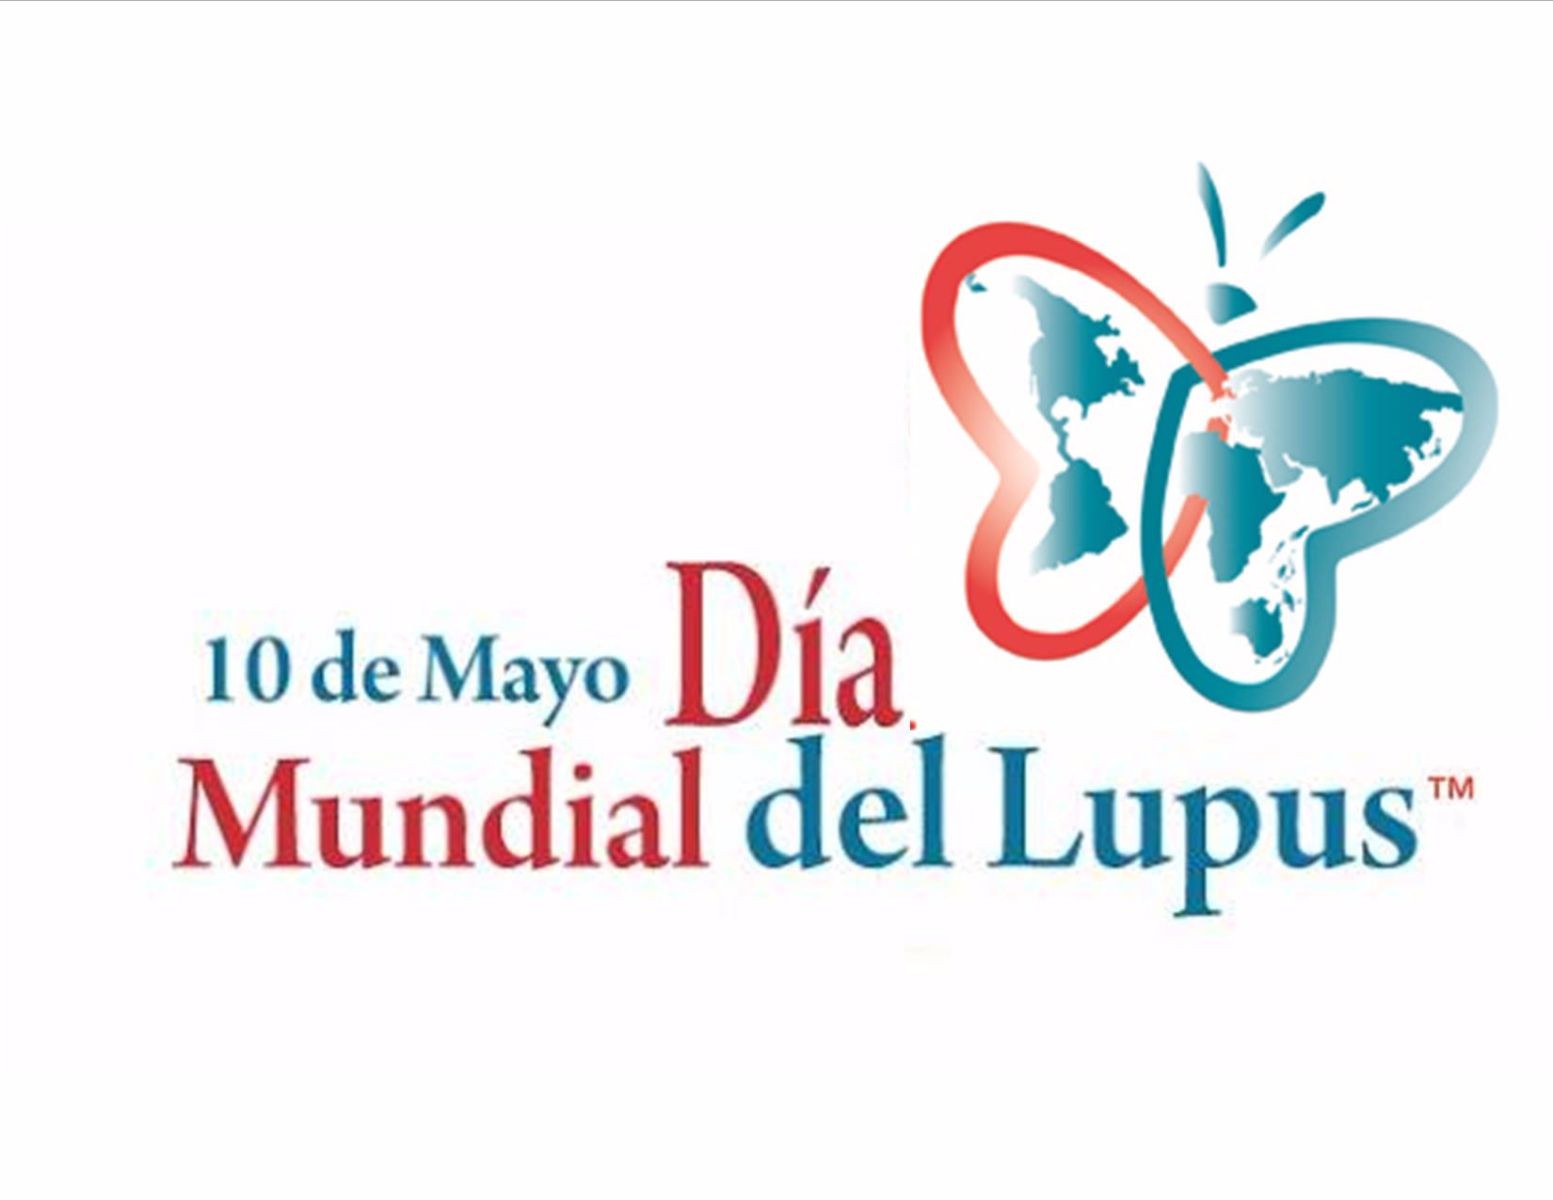 Logotipo con mariposa y el texto "Día Mundial del Lupus"